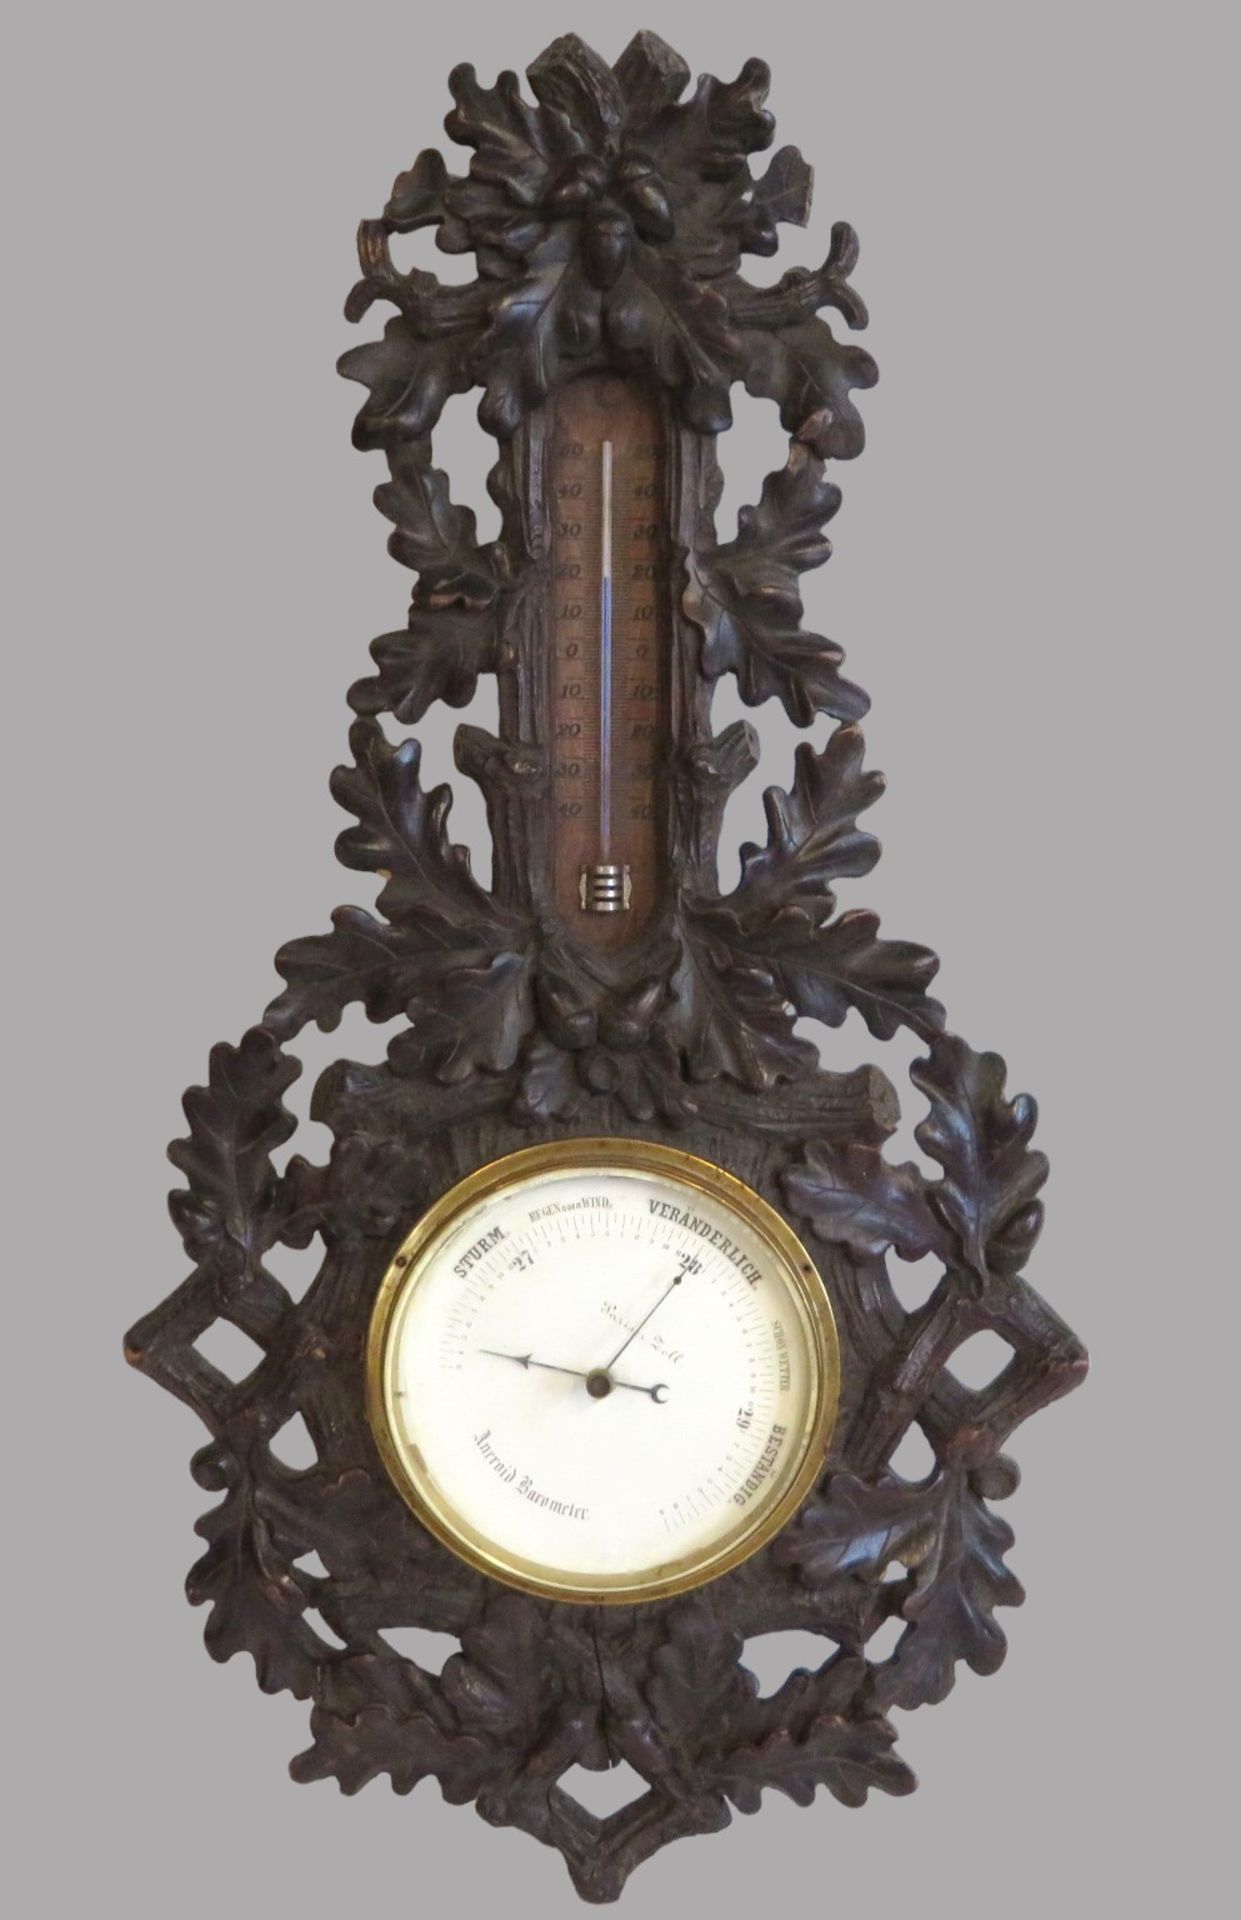 Aneroidbarometer, Schwarzwald, 19. Jahrhundert, Weichholz mit Eichenlaub und Eicheln geschnitzt, 58